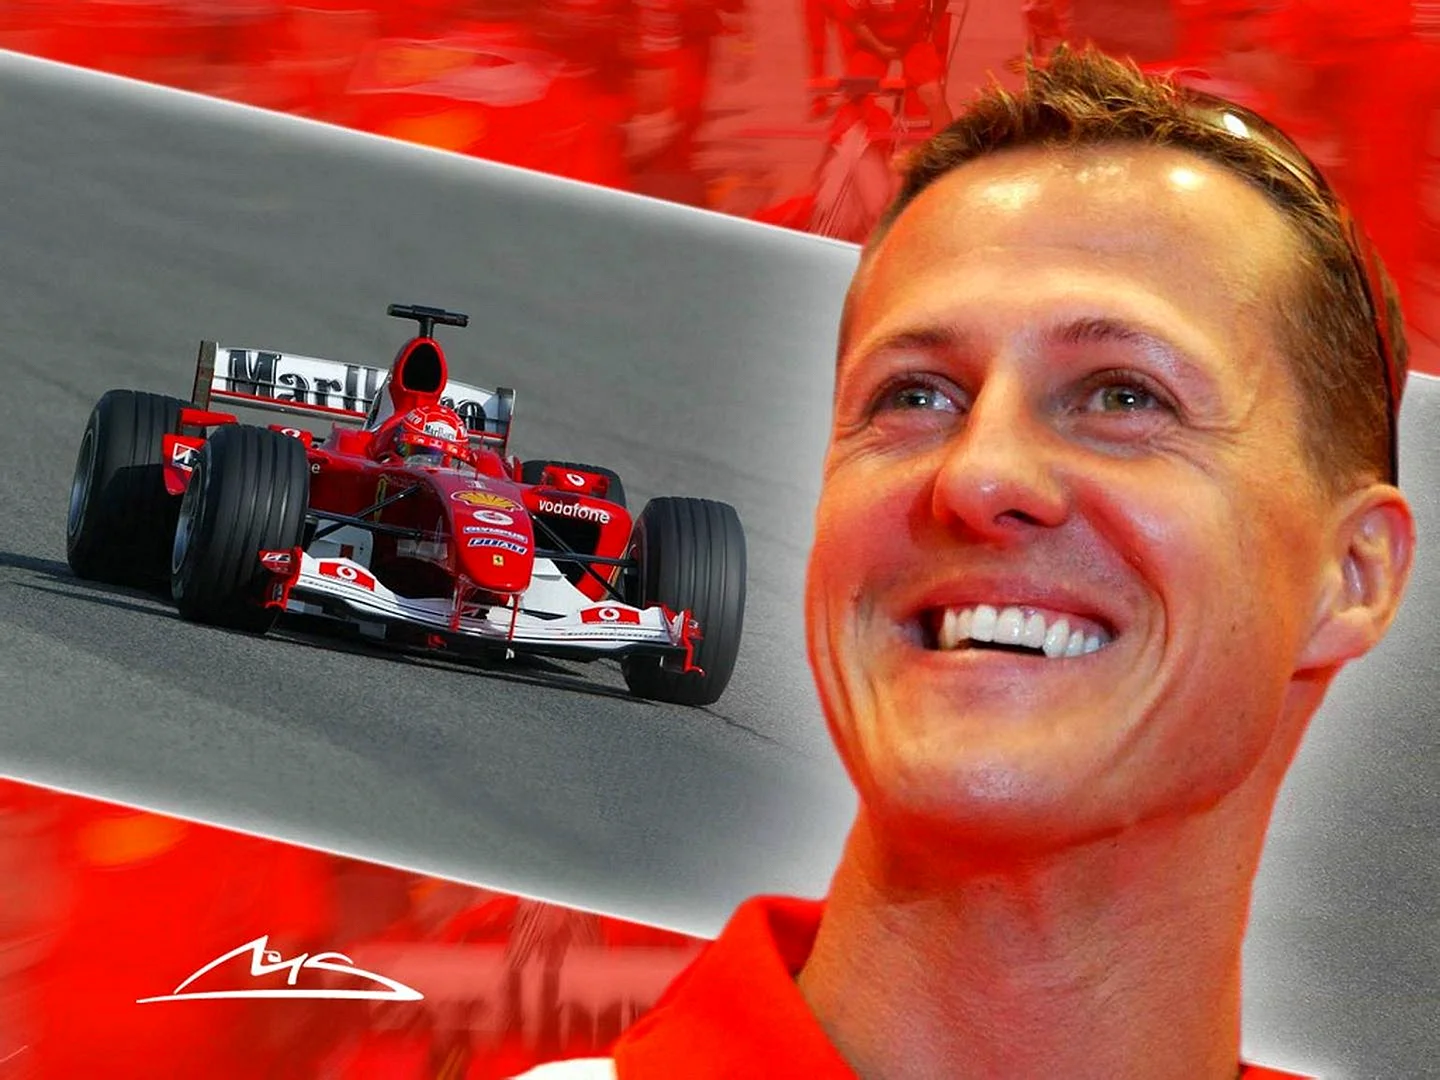 Michael Schumacher 2014 Wallpaper